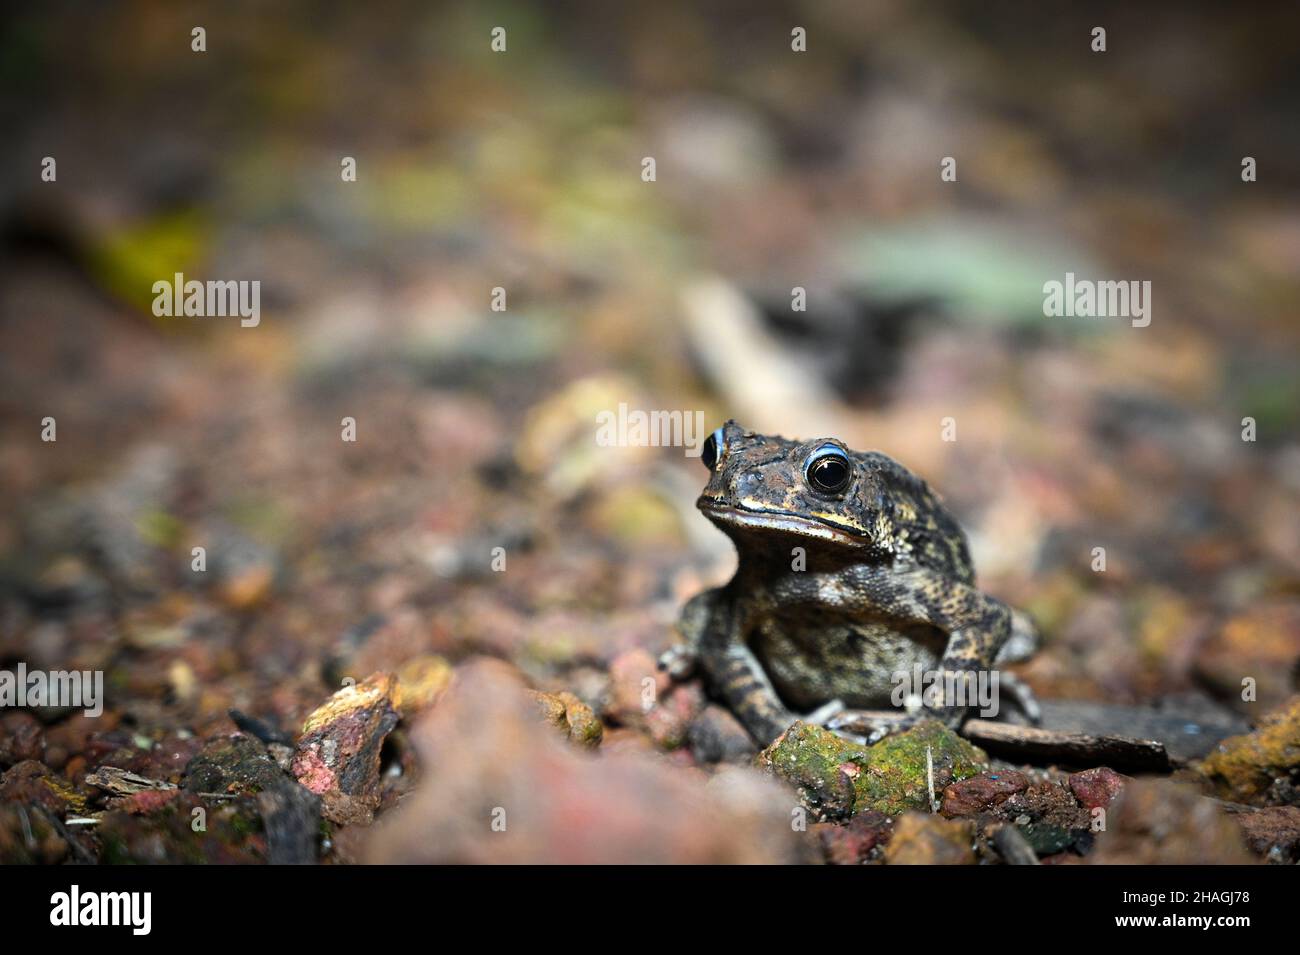 Niedliche asiatische gemeinsame Kröte Frosch auf dem Boden Stockfoto